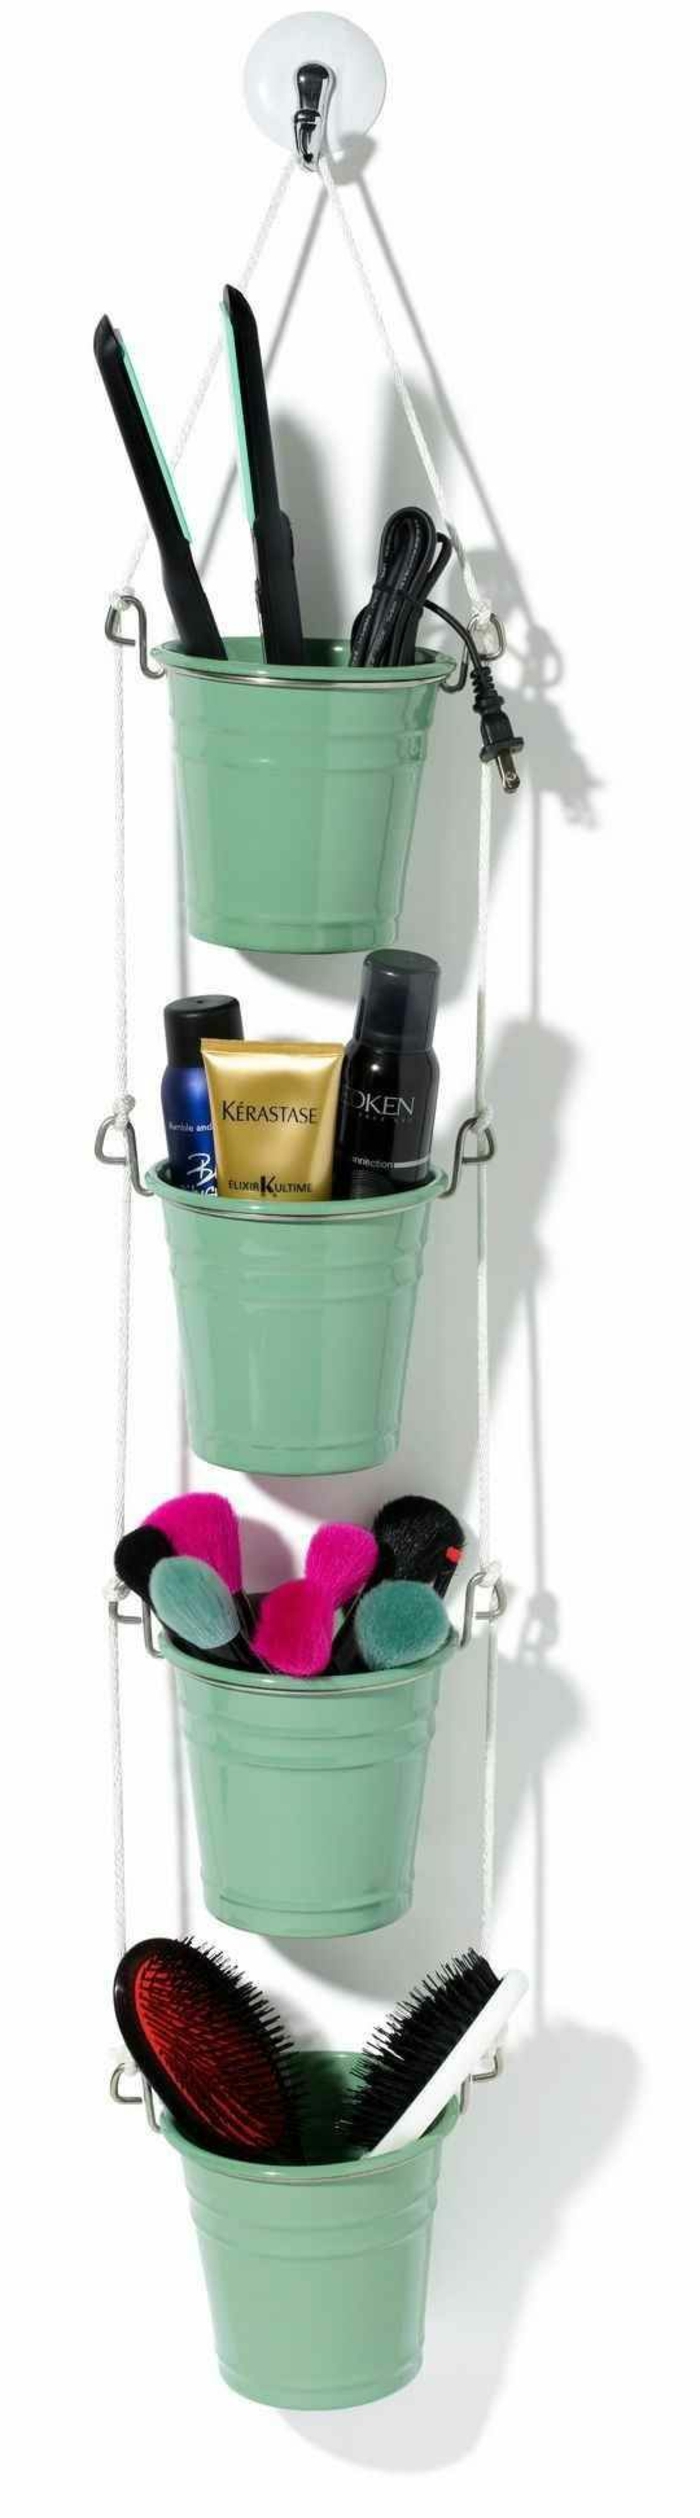 Salle de bain Idées petits produits seau-cosmétique vert